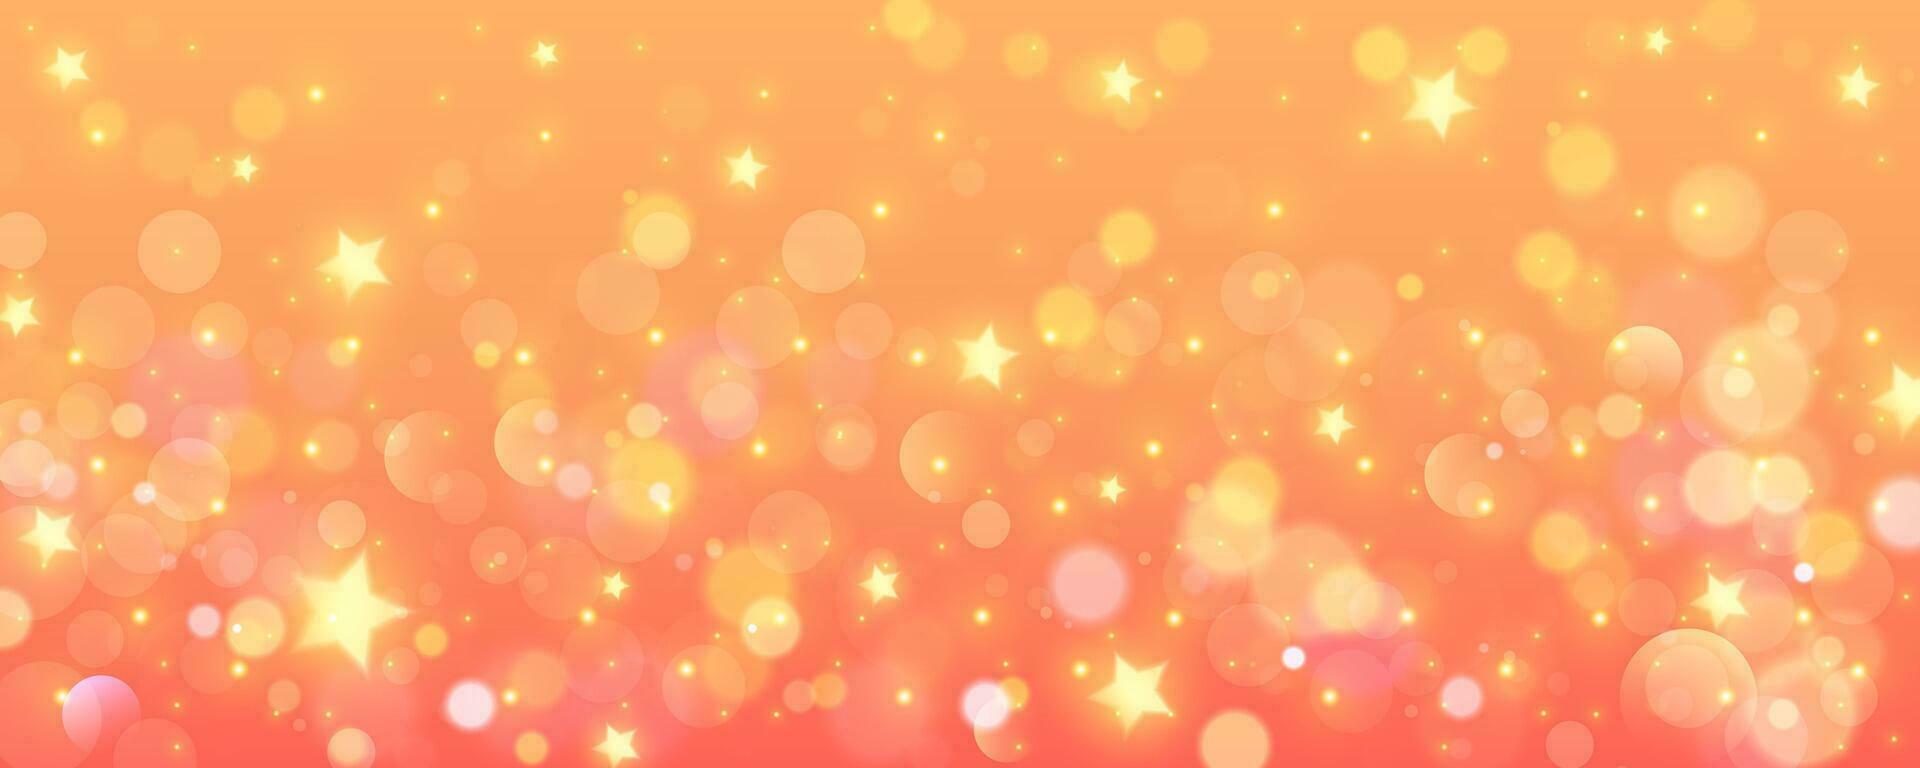 orange lutning bakgrund. pastell solig himmel med glitter stjärnor och bokeh. fantasi galax med gnistrar. magi marmor Plats. vektor